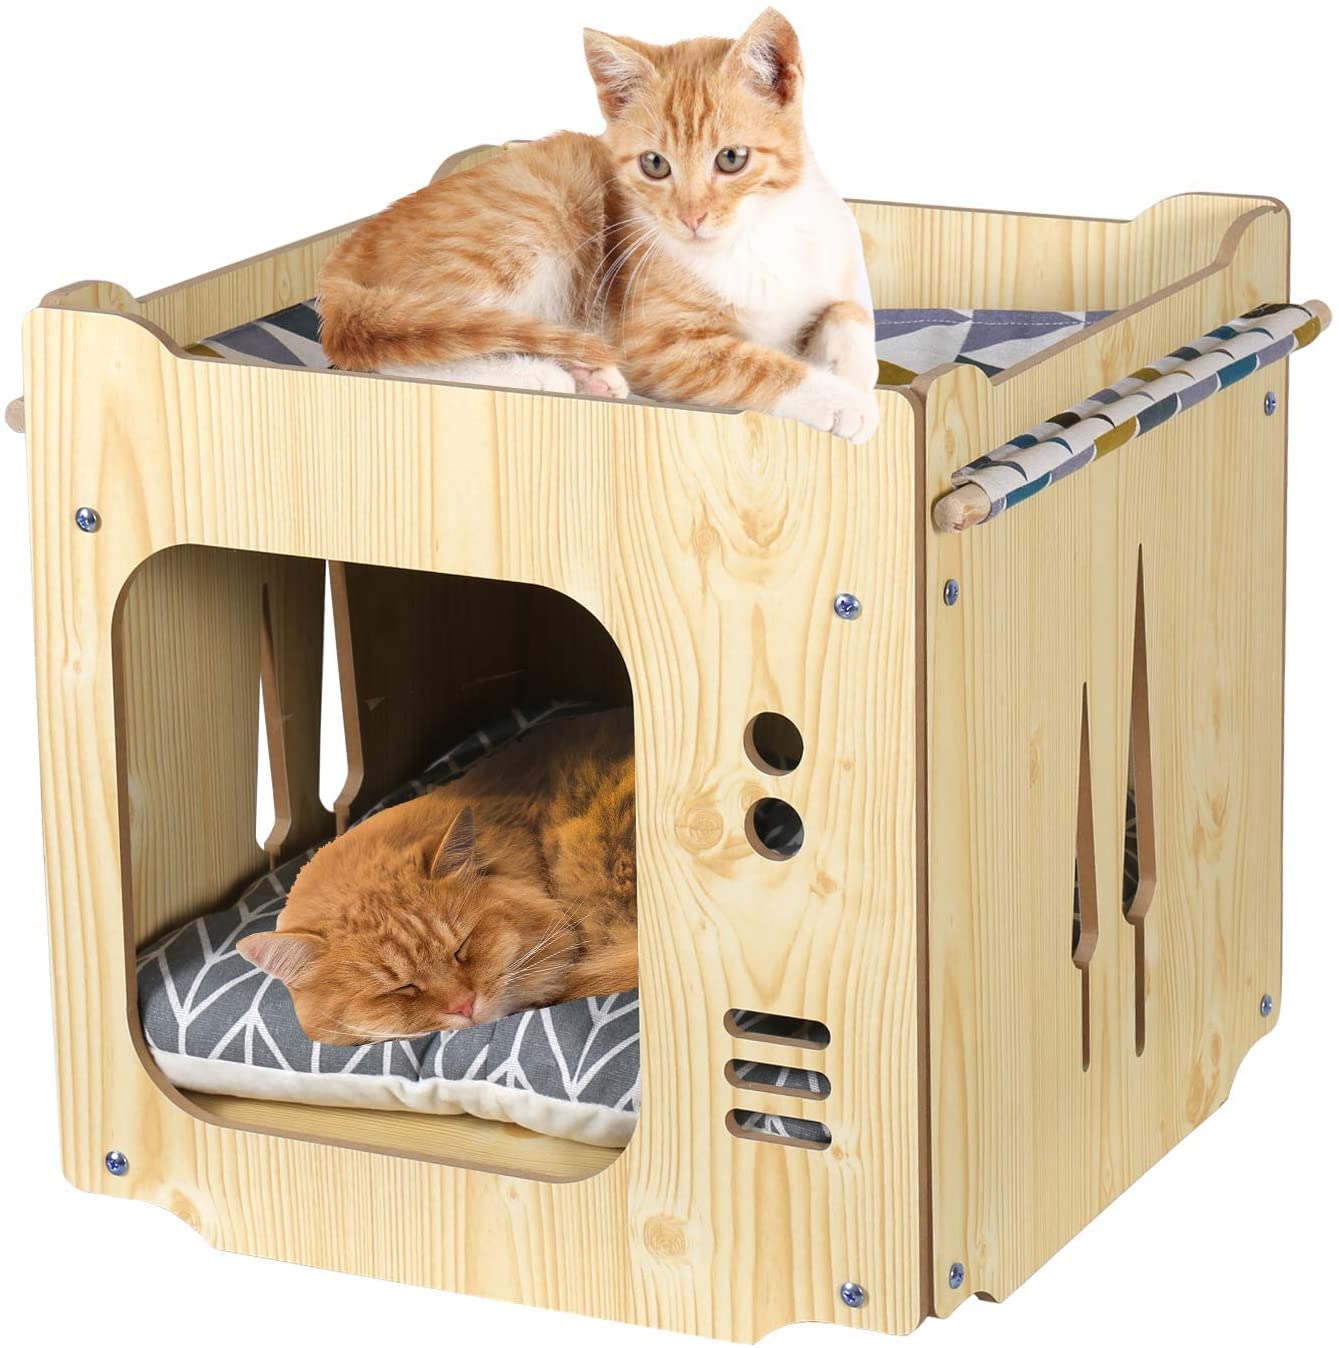 ペットベッド キャットハウス ボックスハウス クッションマット付き ハンモック 2階猫用 ケージ ドーム型 箱型 組み立て 木製 通気 防潮 丈夫 猫ソファ 四季使える